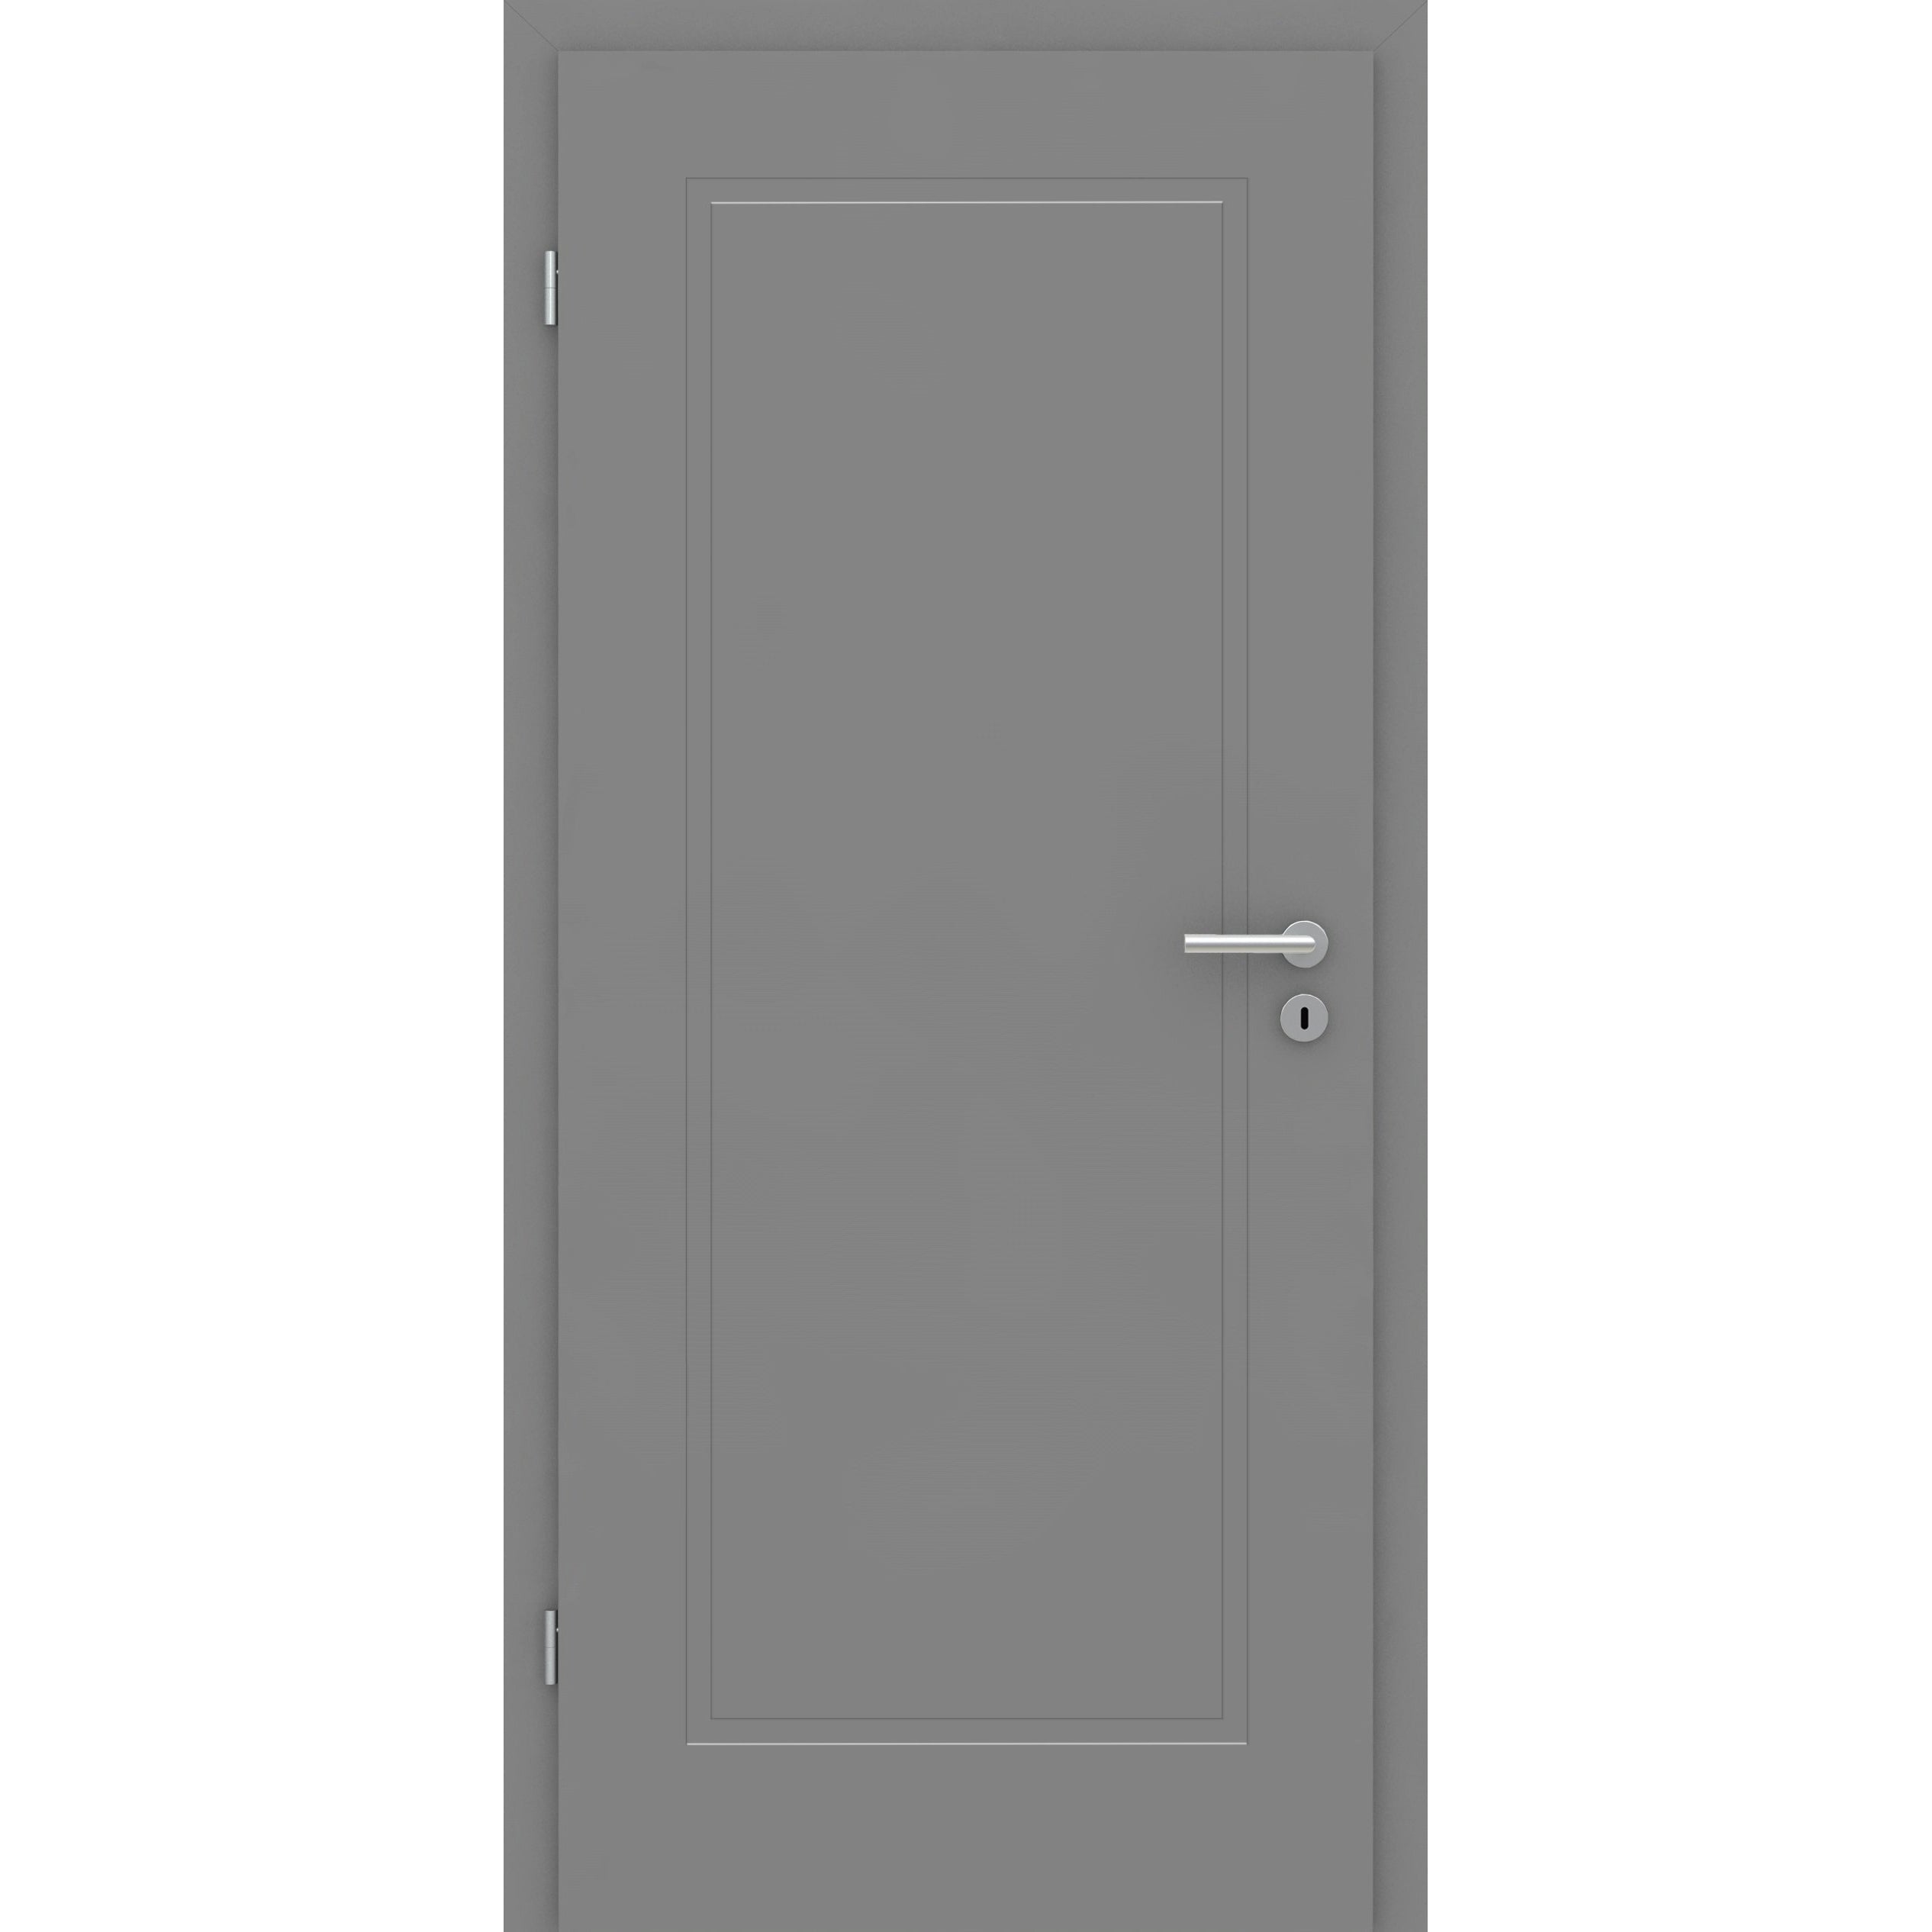 Wohnungseingangstür mit Zarge grau 1 Kassette Designkante SK1 / KK3 - Modell Stiltür M17